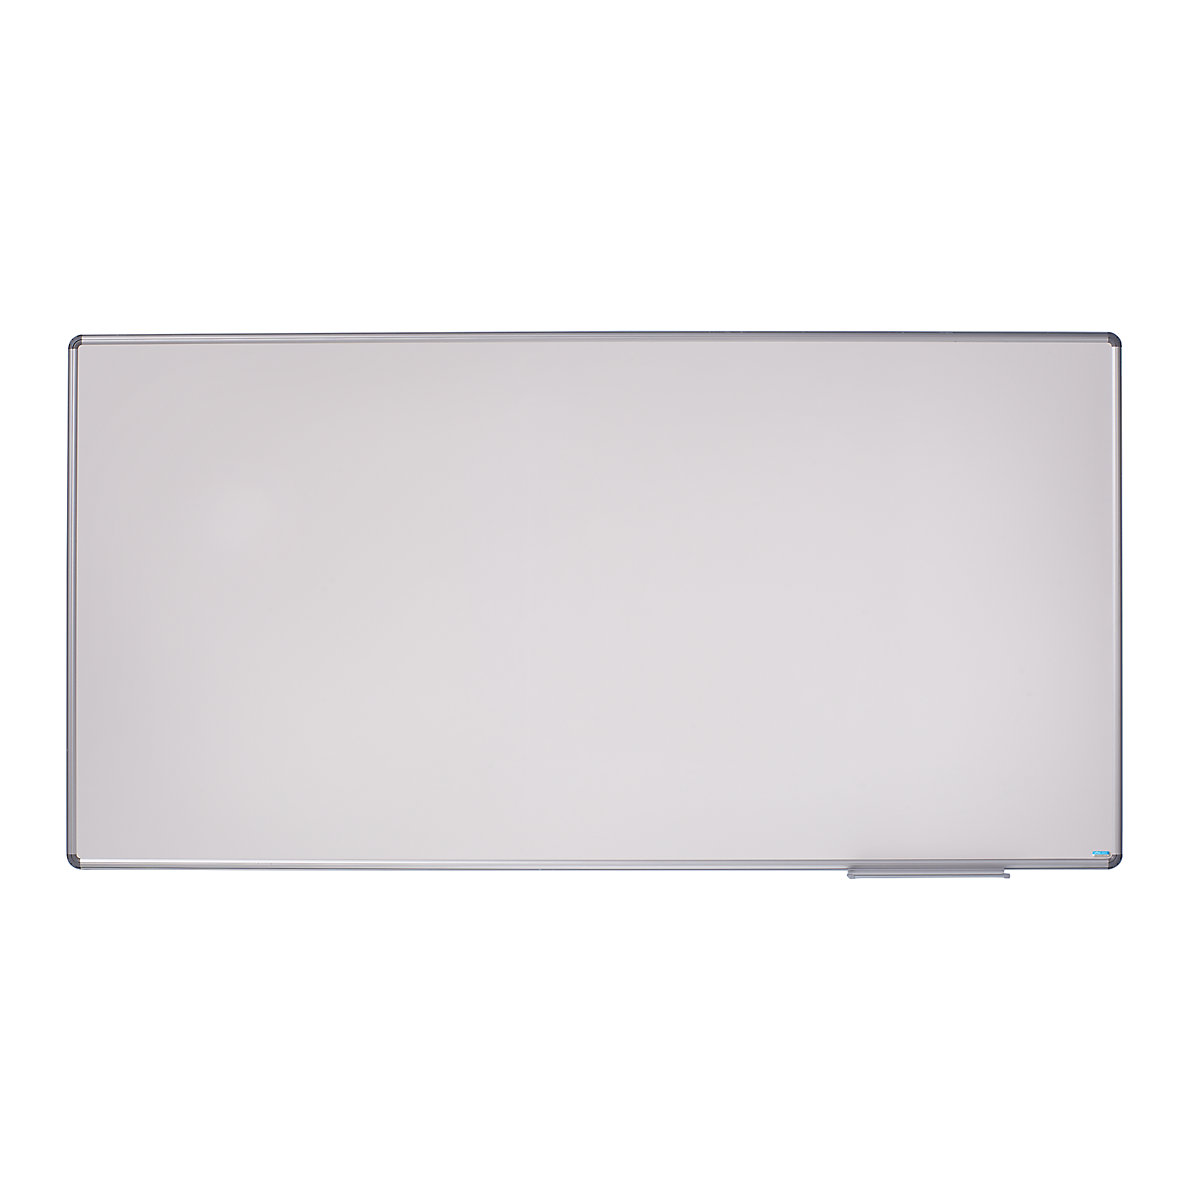 Designer notice board – eurokraft pro, sheet steel, enamel, WxH 2400 x 1200 mm-8